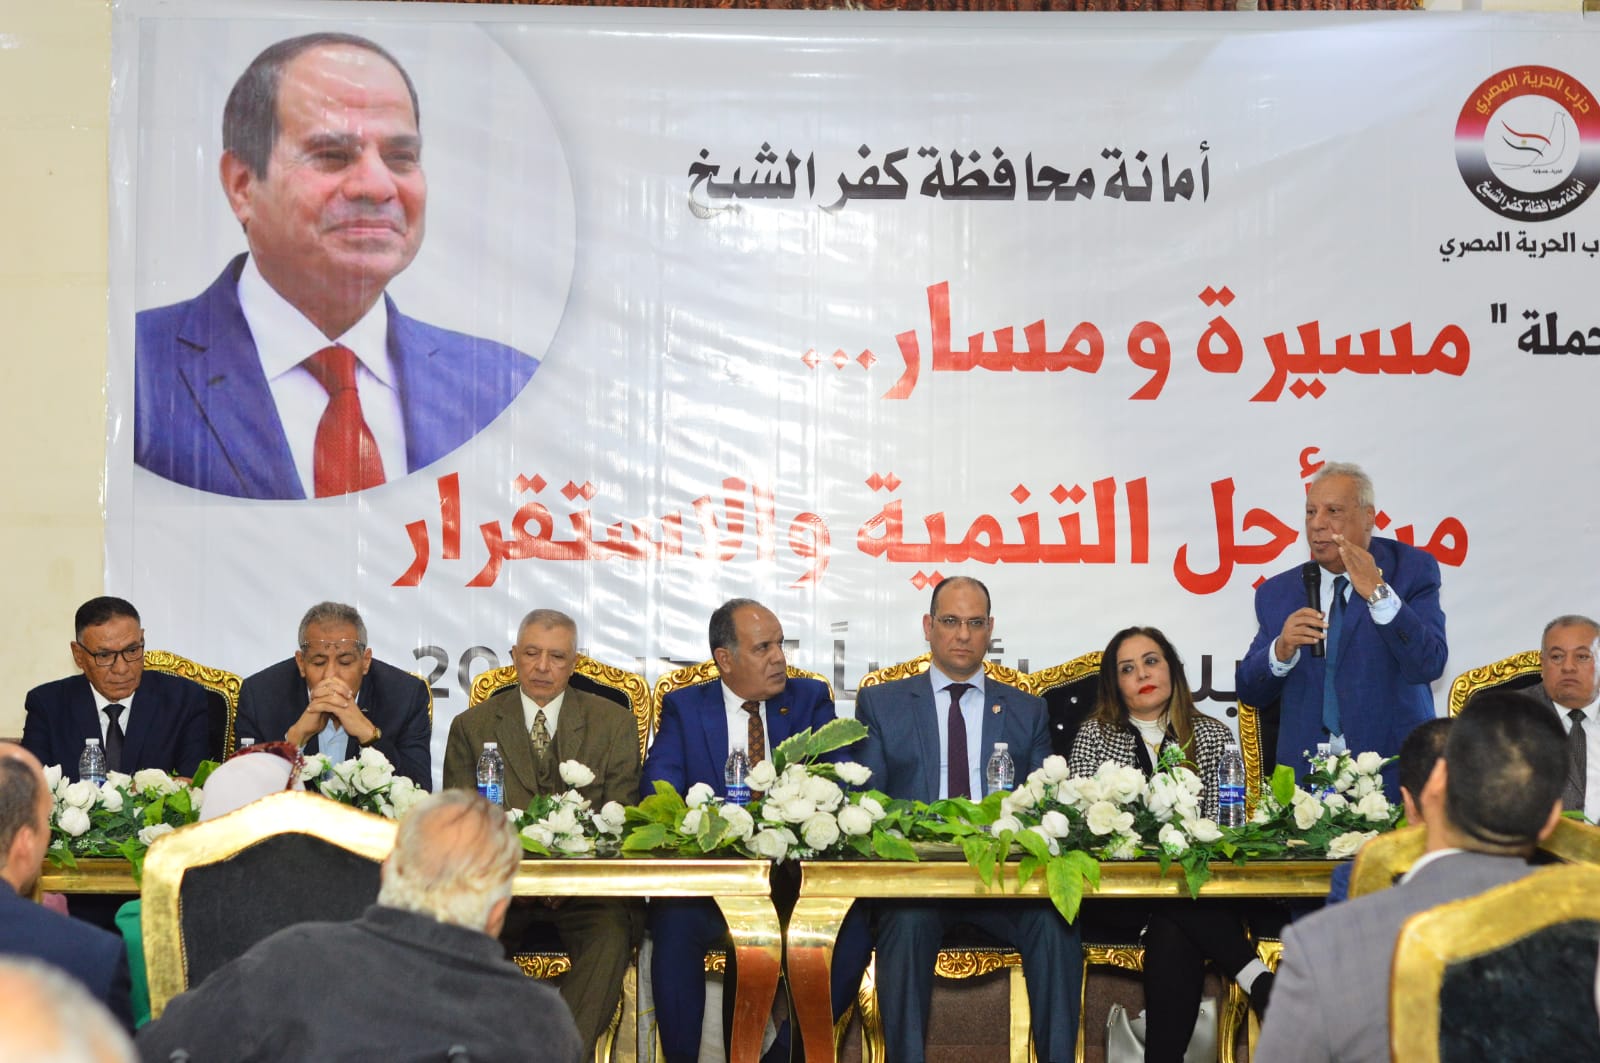 مؤتمر حزب الحرية المصري بكفرالشيخ يعلن تأييده الكامل للمرشح الرئاسي عبدالفتاح السيسي|صور